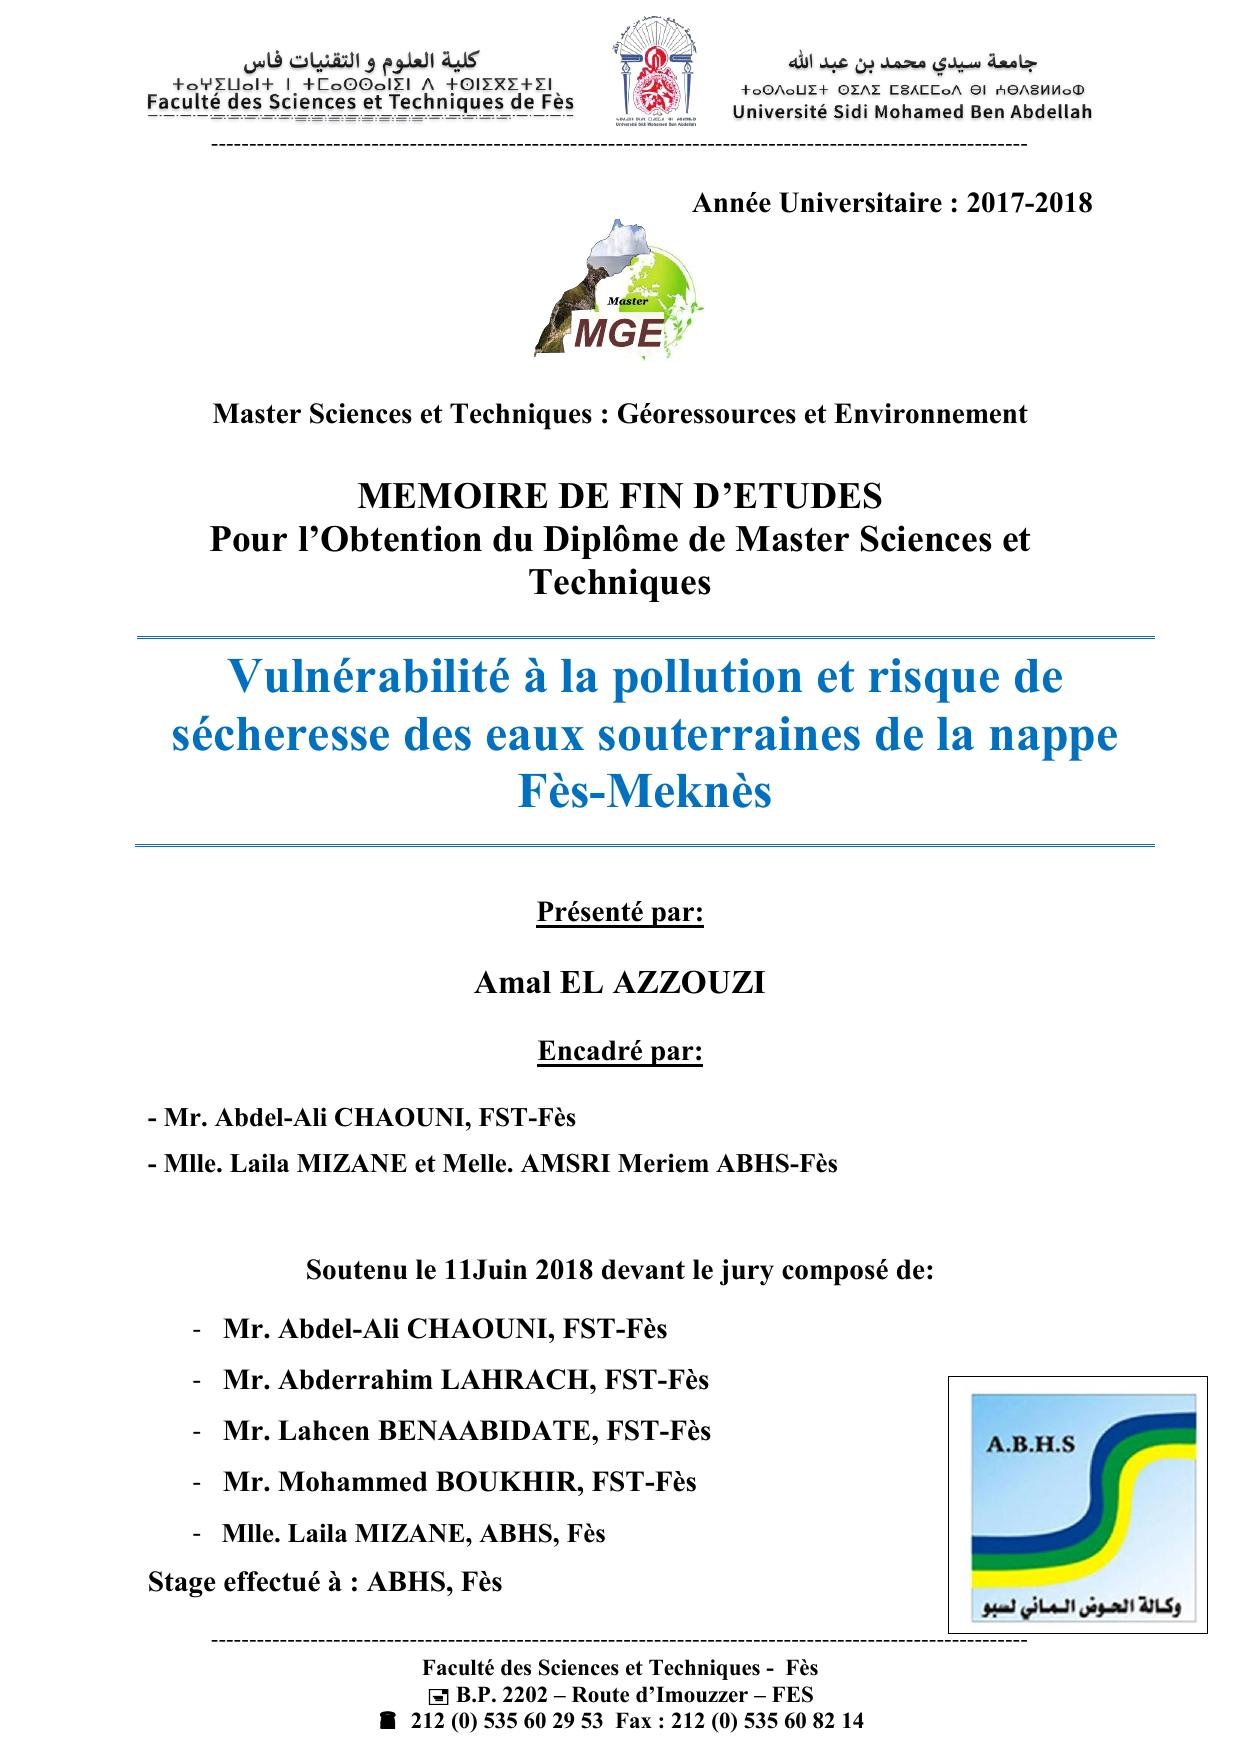 Vulnérabilité à la pollution et risque de sécheresse des eaux souterraines de la nappe Fès-Meknès